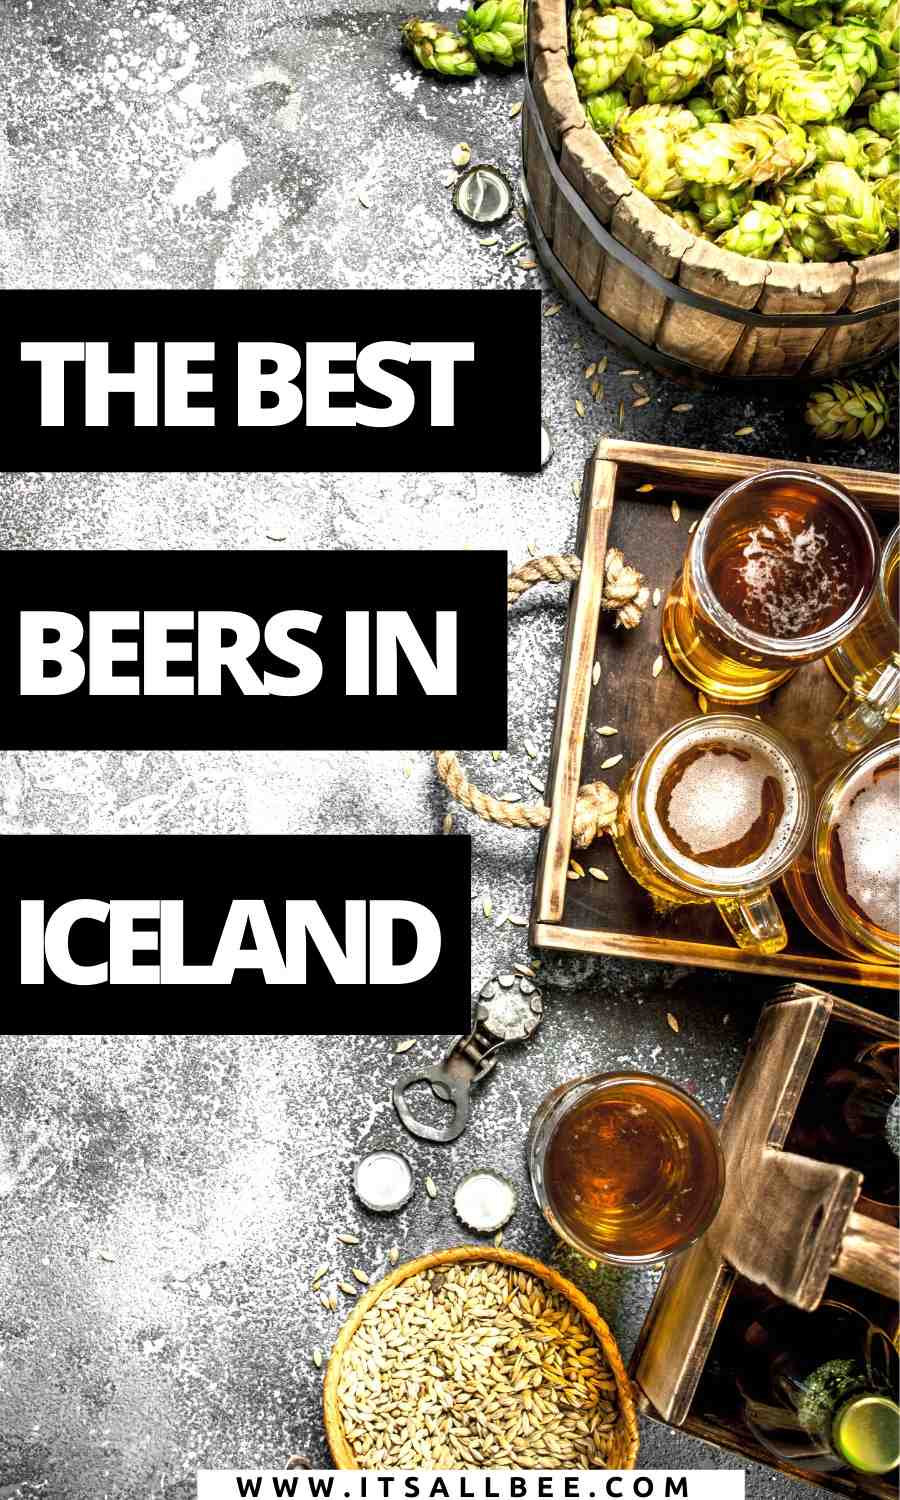 Snorri Icelandic ale, craft beer reykjavik, einstok Icelandic dopplebock, Icelandic pale ale, akureyri beer, brewery best beer iceland, best Icelandic beer, viking brewery, price of beer, cost, most popular beer in Iceland